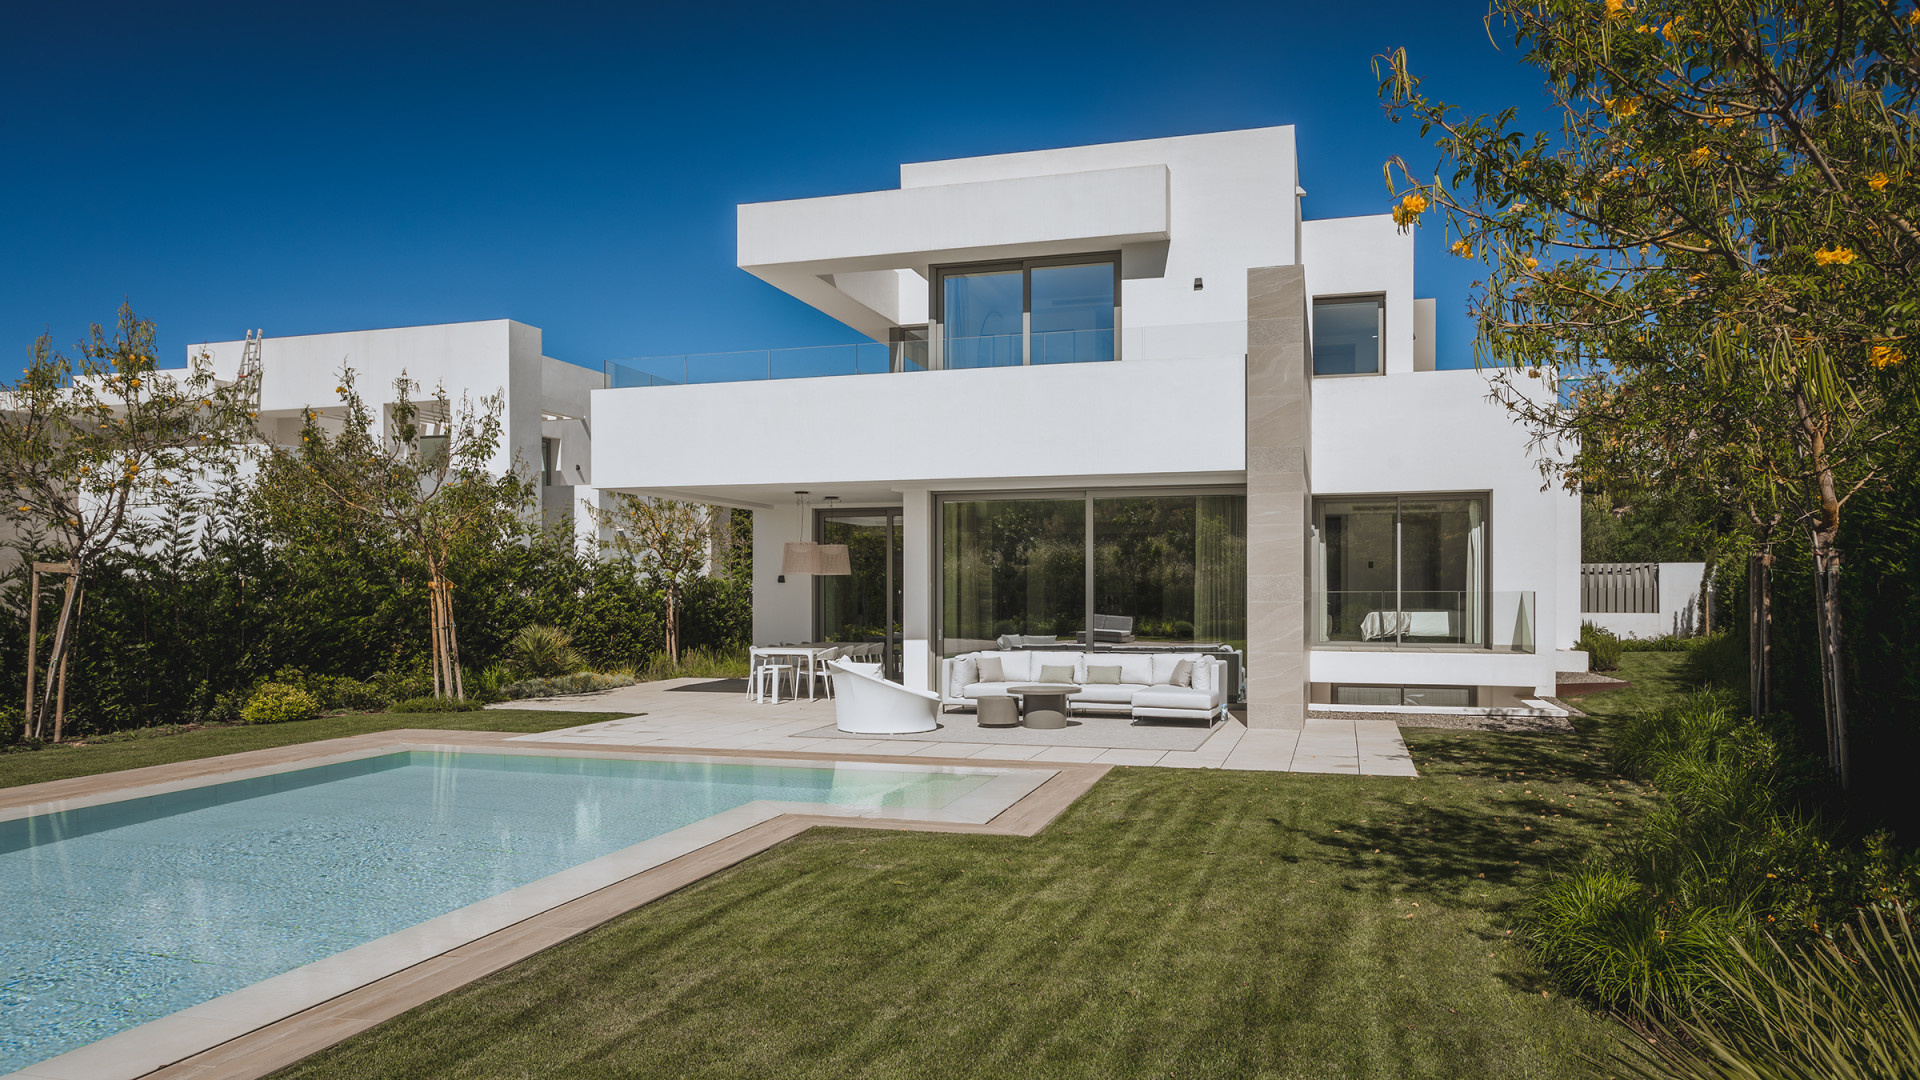 Impresionante complejo moderno de villas de primera calidad en venta en El Paraiso Alto – Estepona